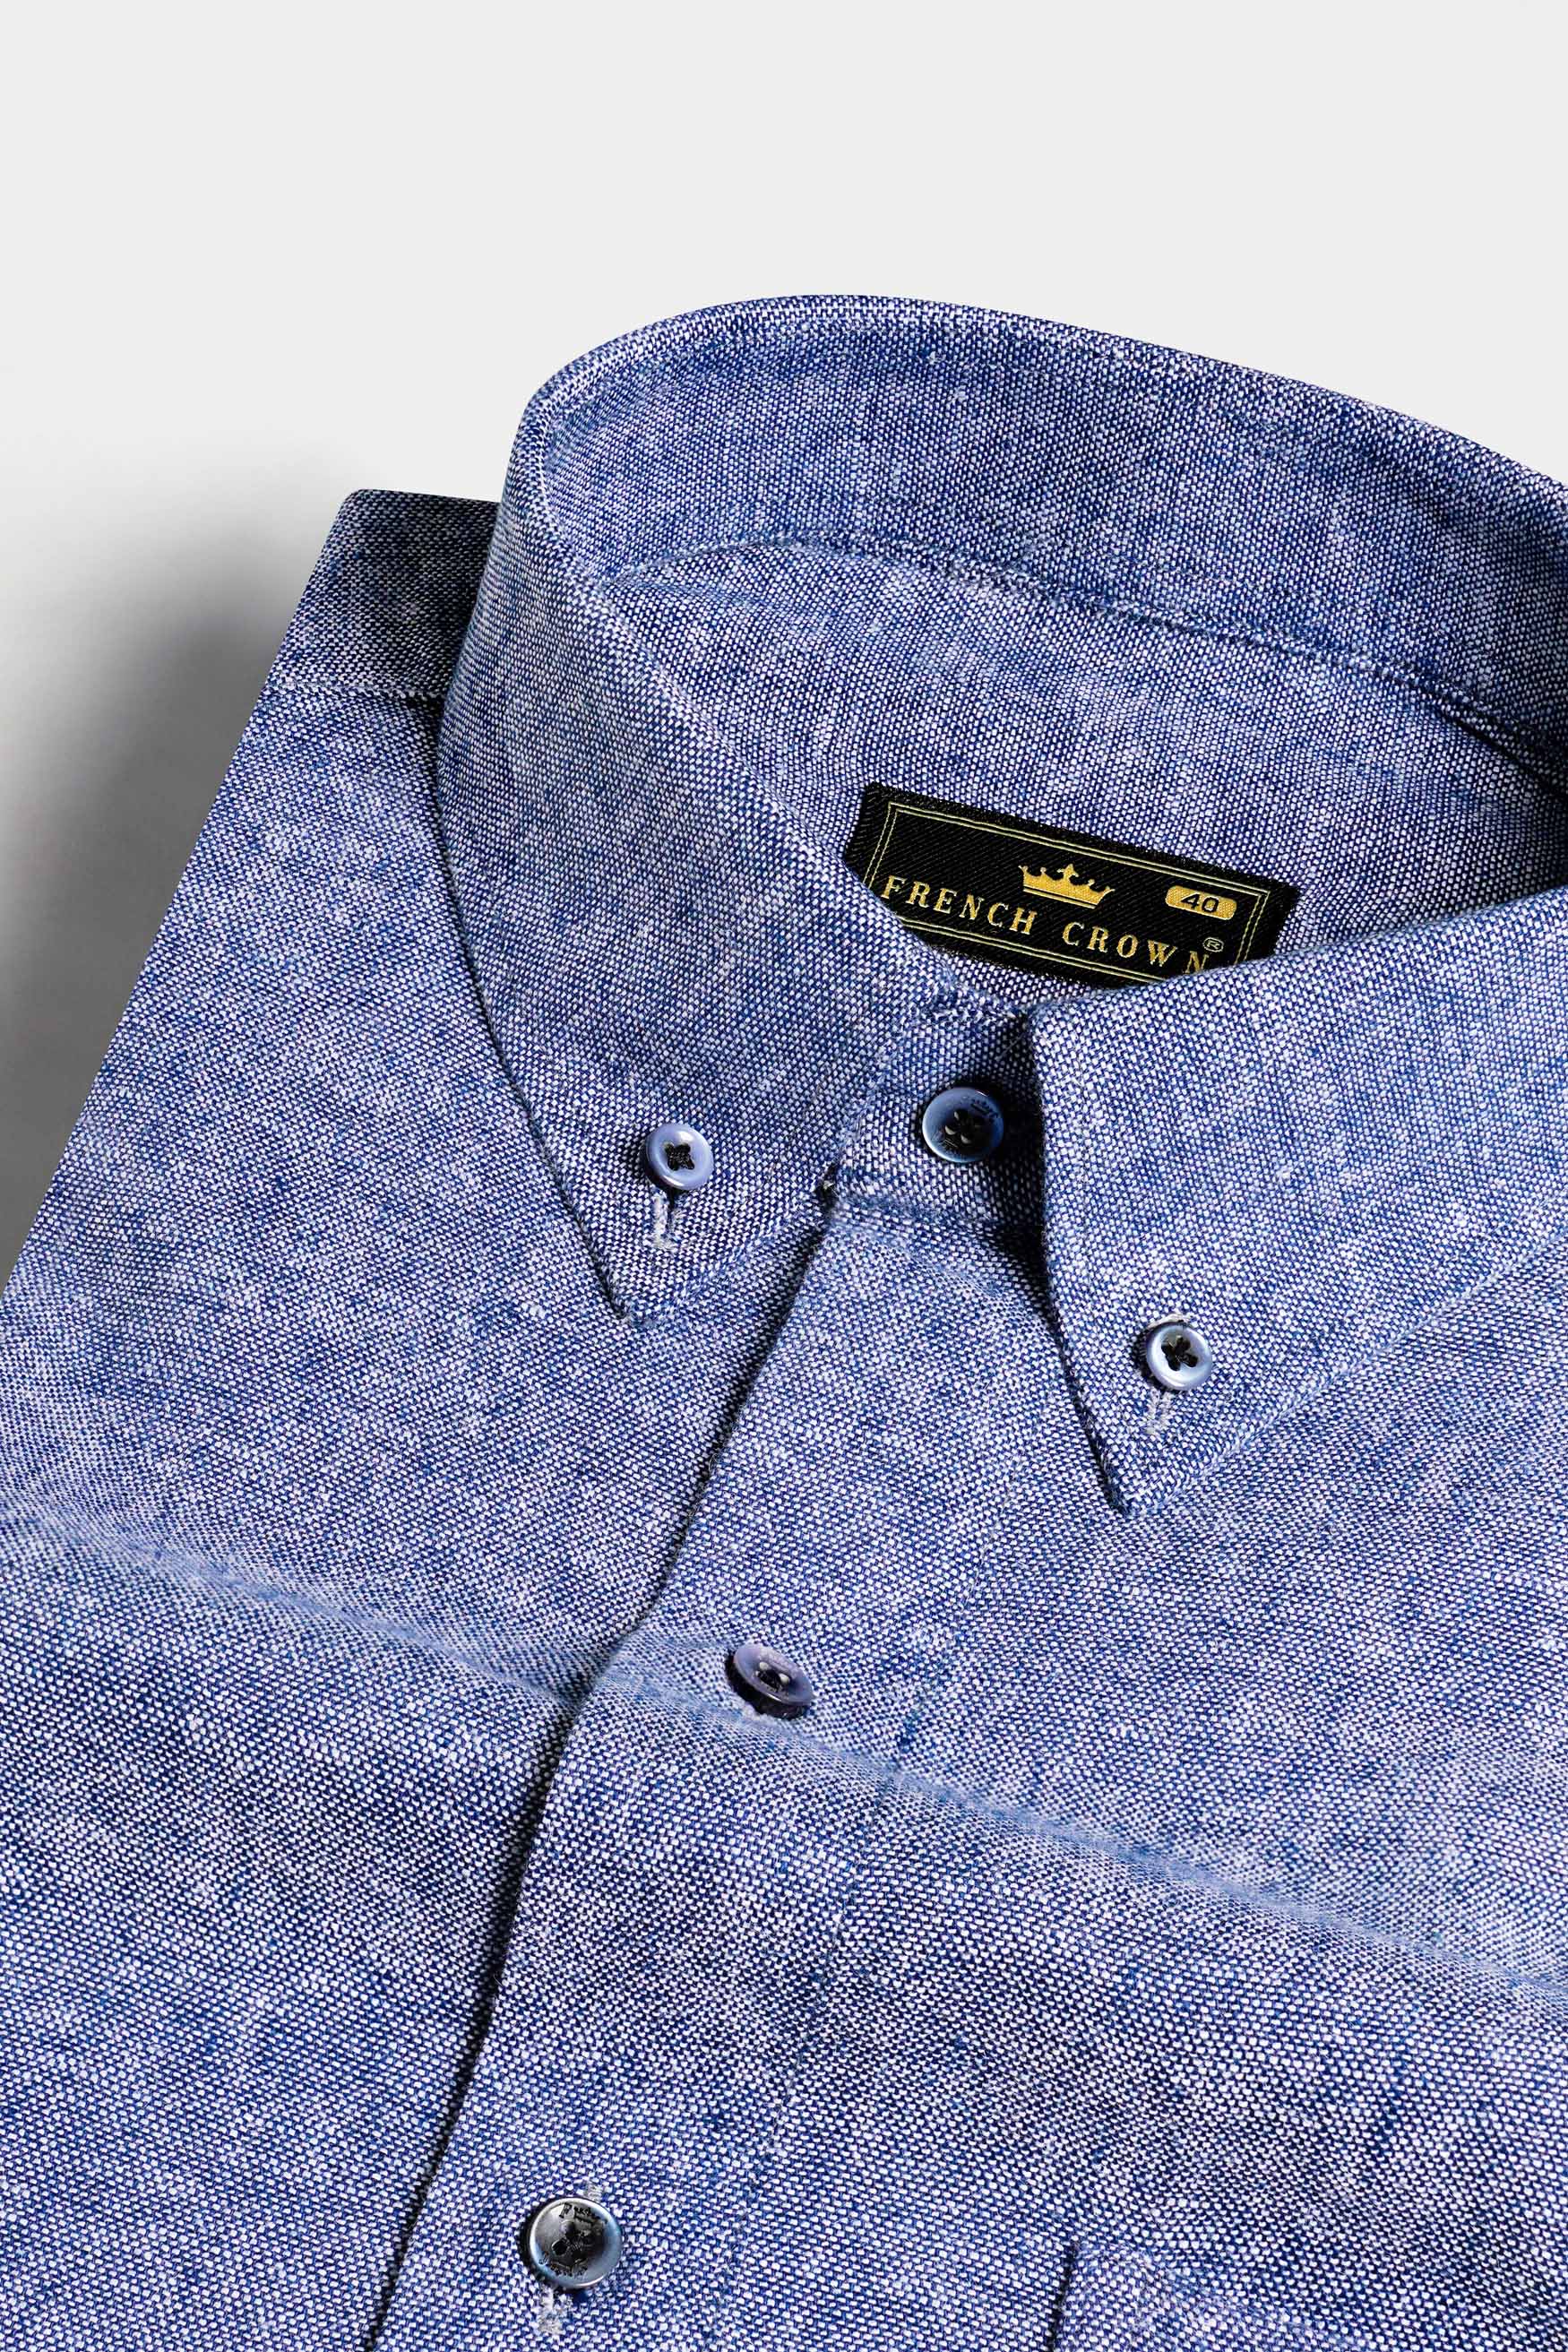 Hoki Gray Luxurious Linen Button Down Shirt